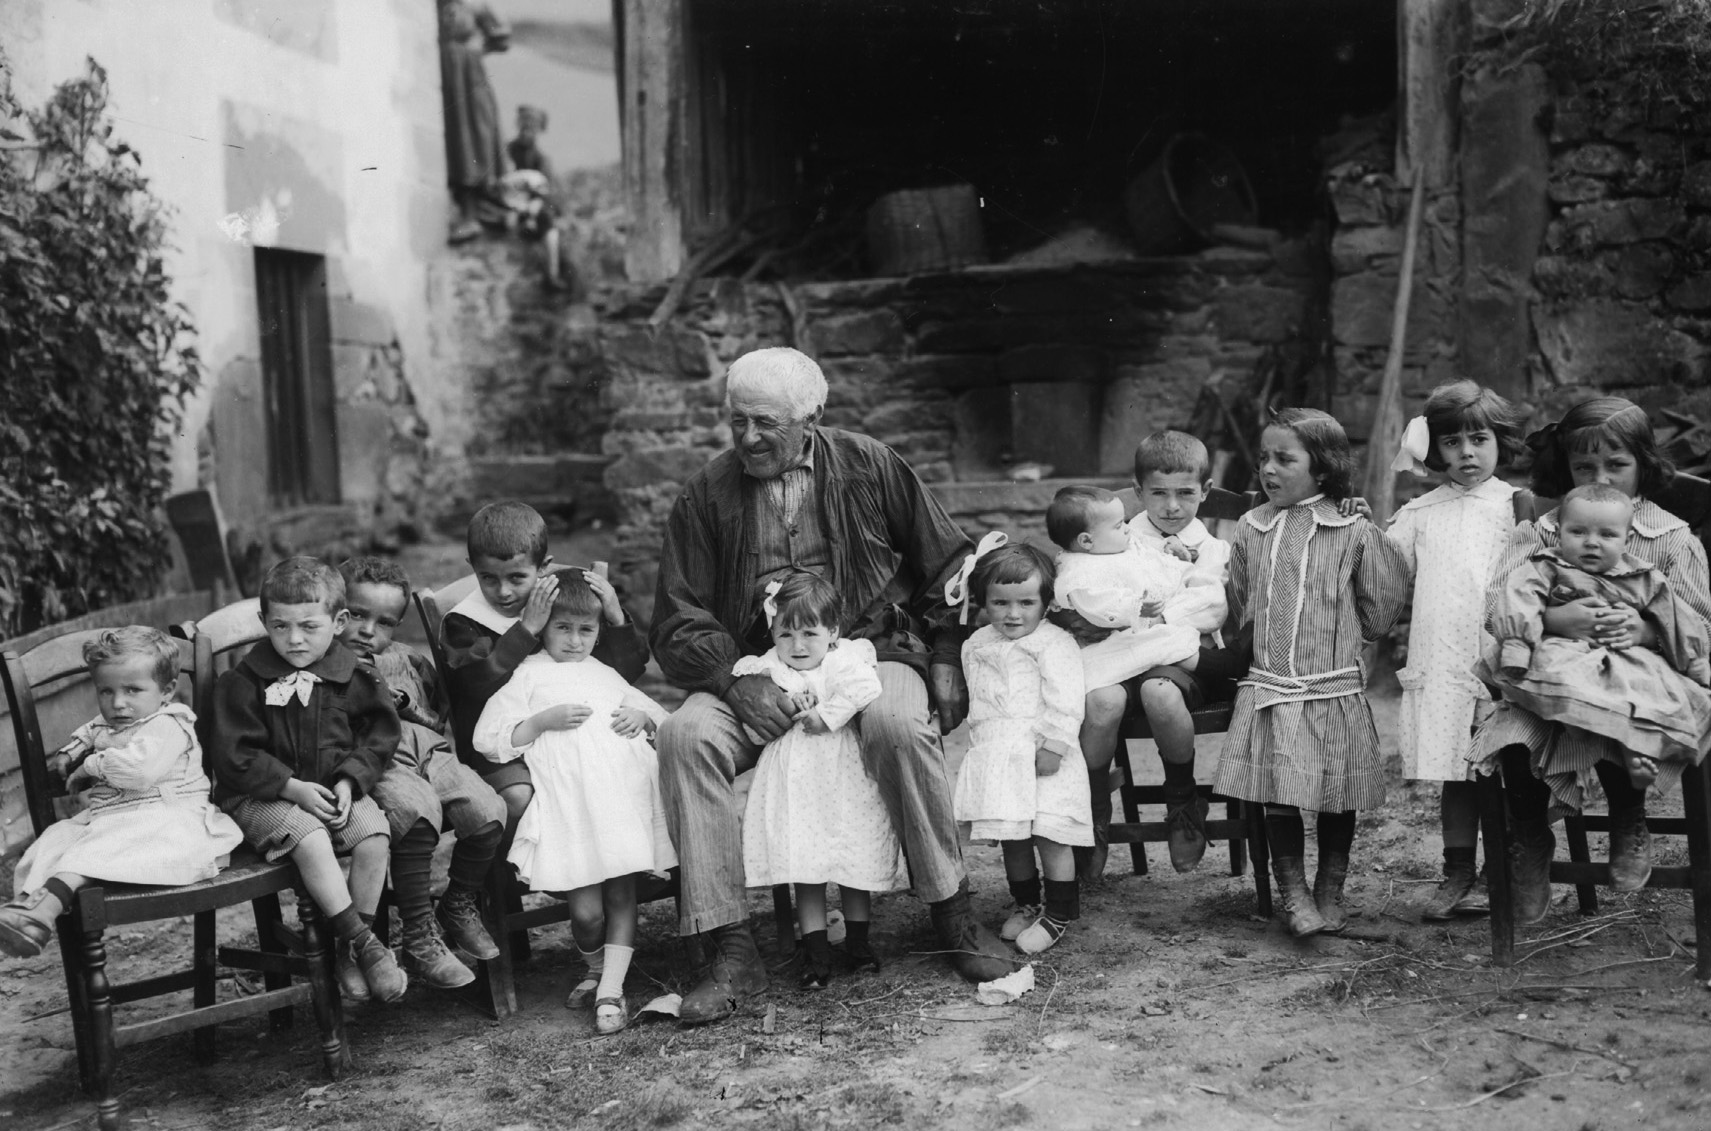 With the grandchildren. Zeanuri (Bizkaia), c. 1910. Felipe Manterola